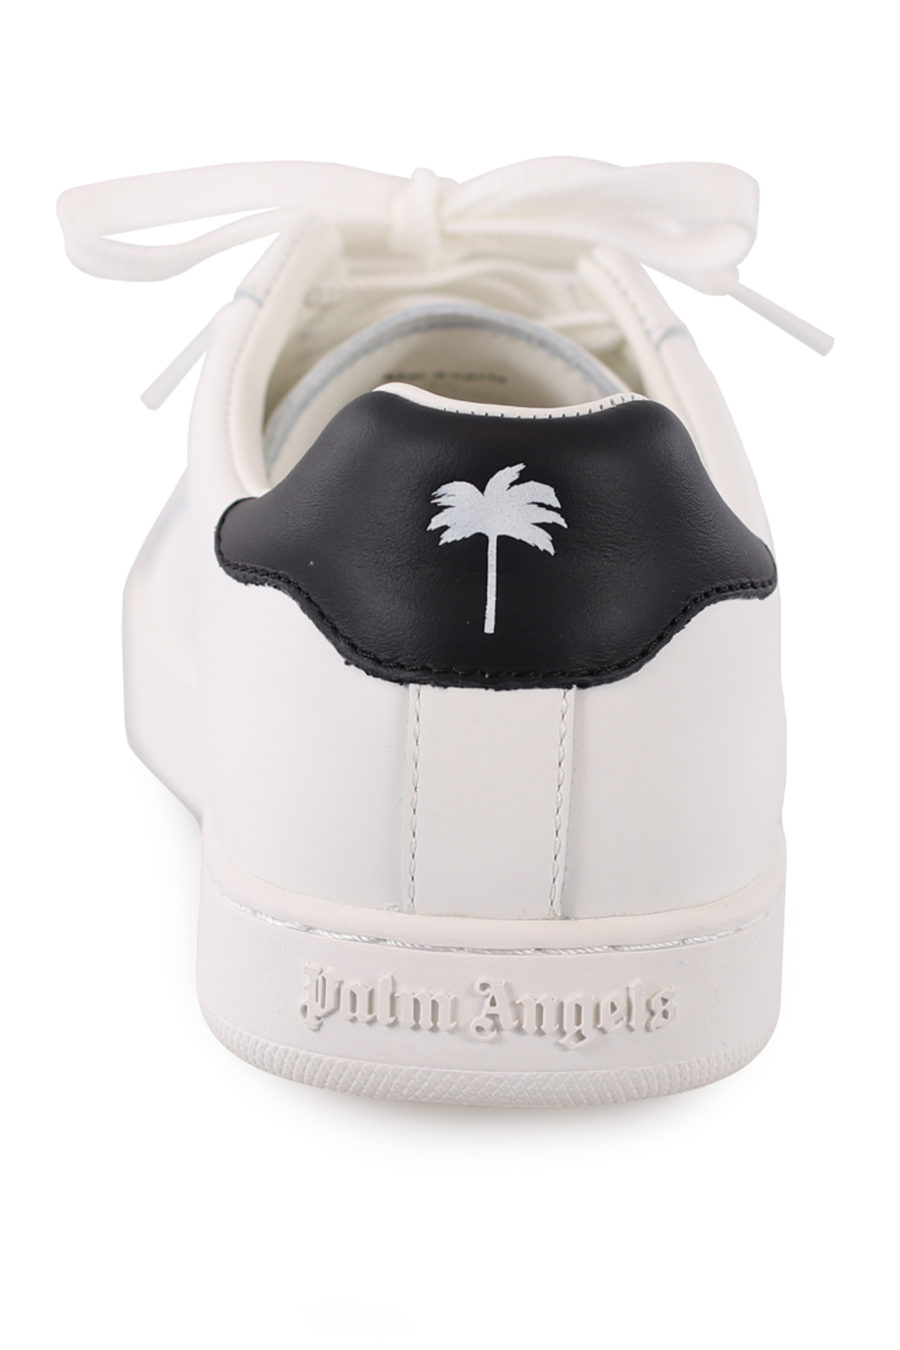 Zapatillas blancas con logo dorado - IMG 9054